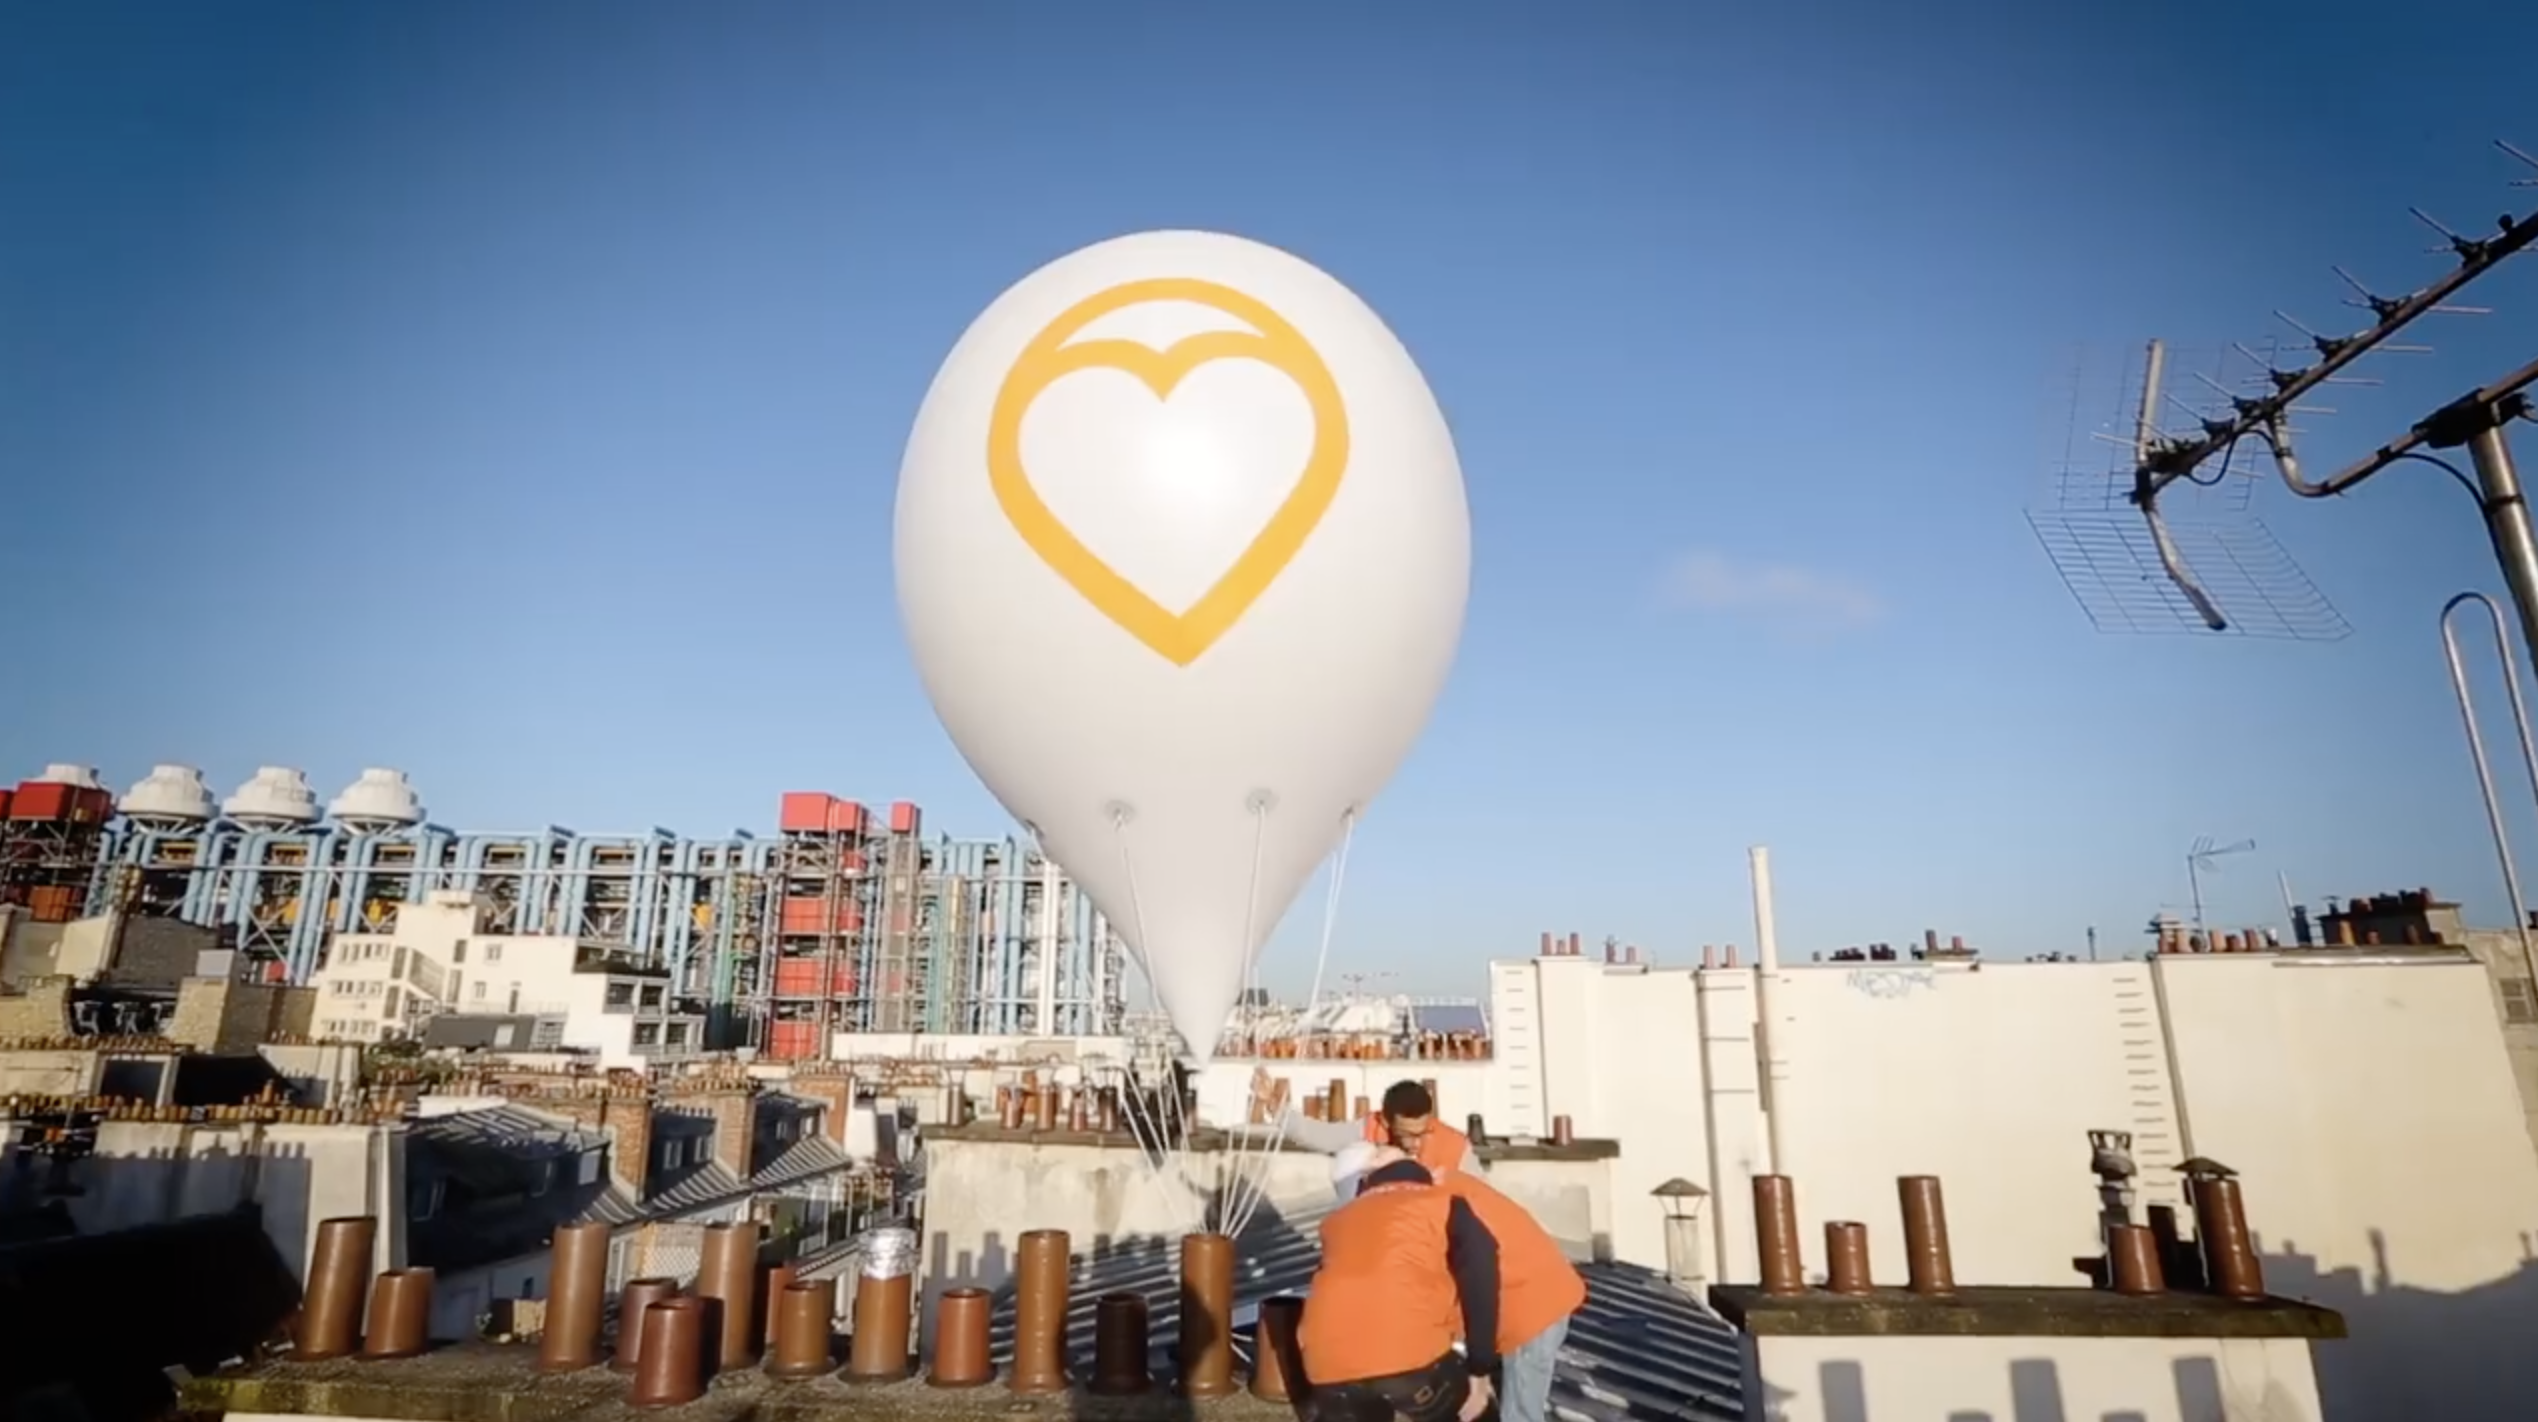 Bien'ici : le site immobilier attache des ballons sur le toit de ses biens à Paris